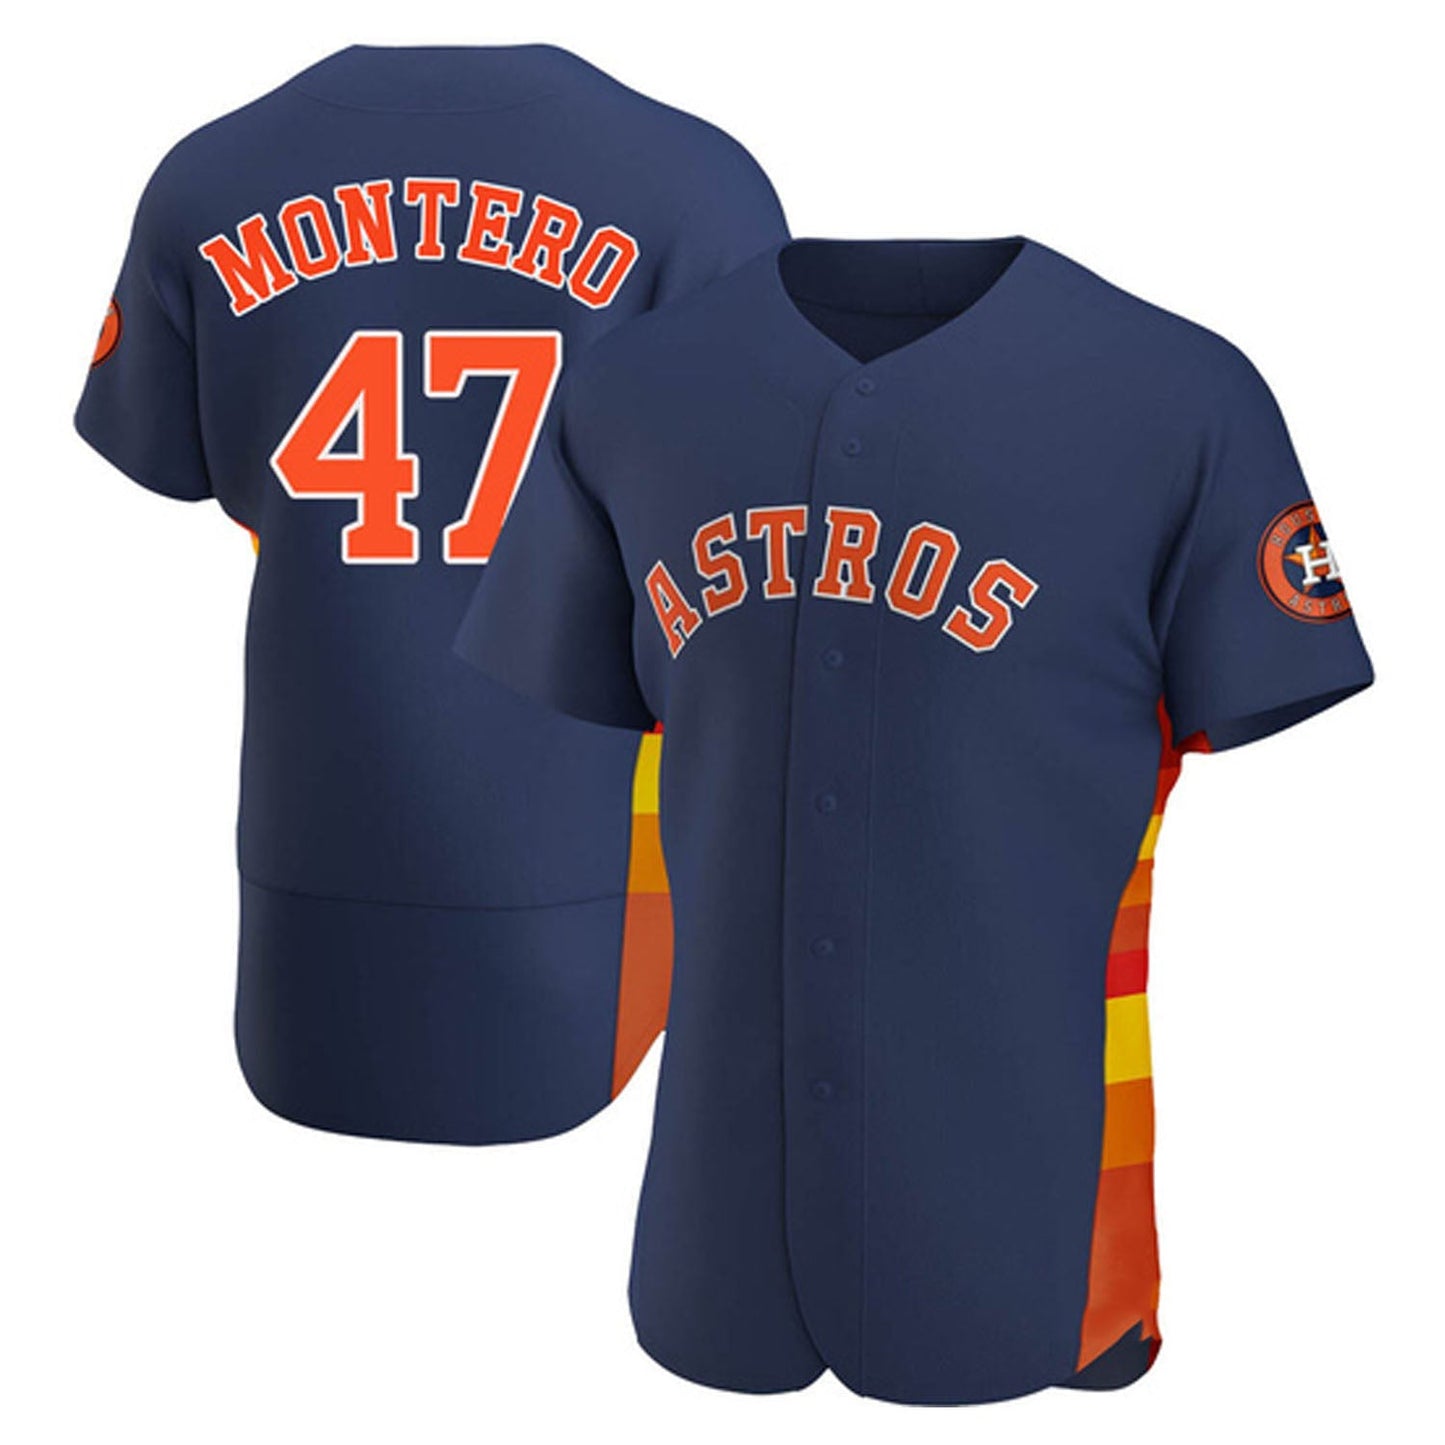 MLB Rafael Montero Houston Astros 47 Jersey